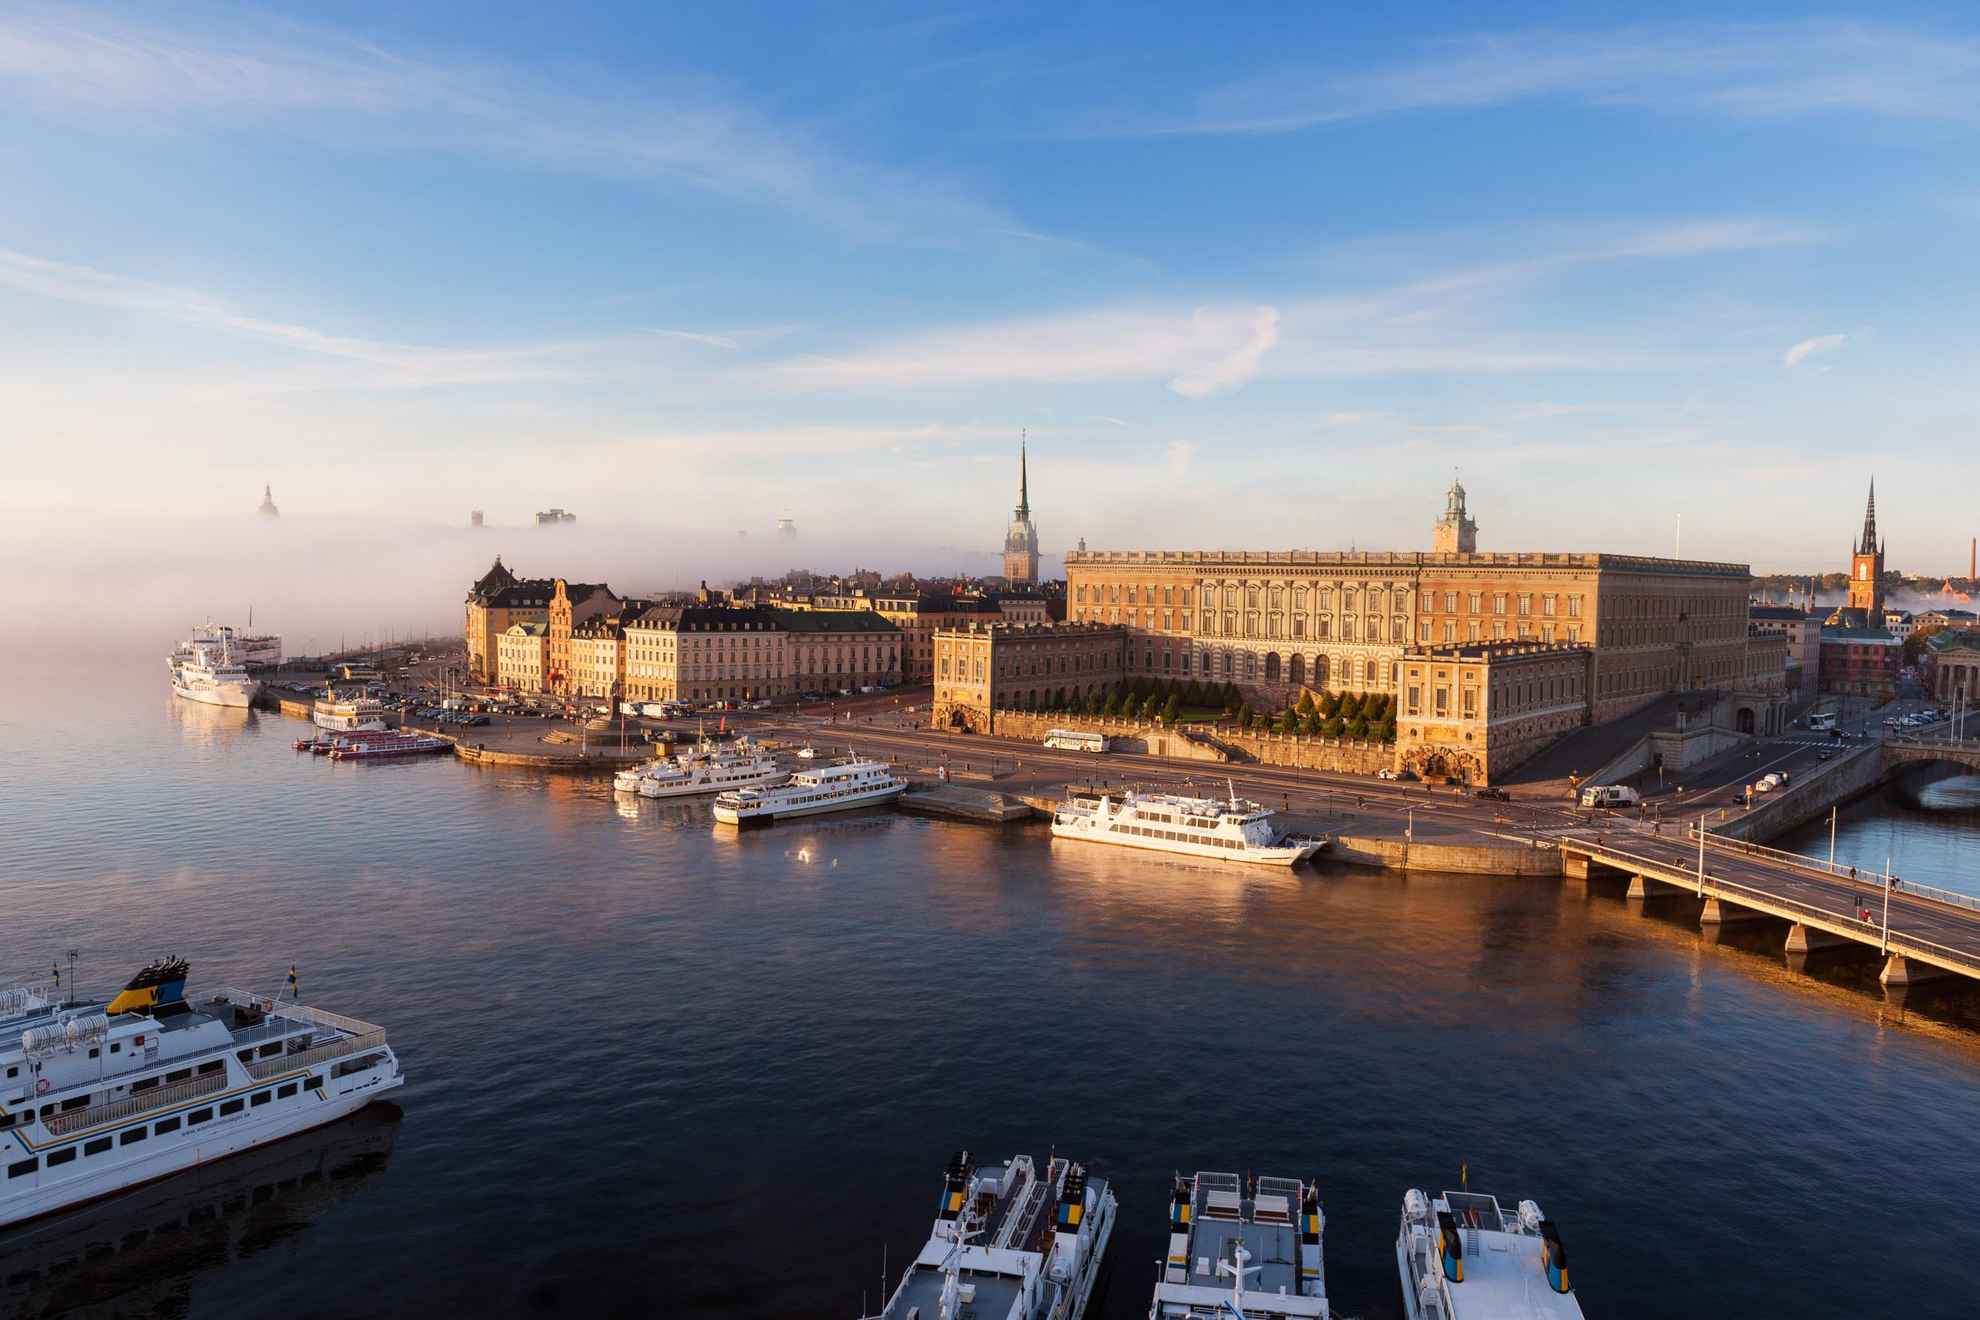 Luchtfoto uitzicht over het Koninklijk Paleis en andere gebouwen in de stad Stockholm. Boten liggen afgemeerd langs de haven.